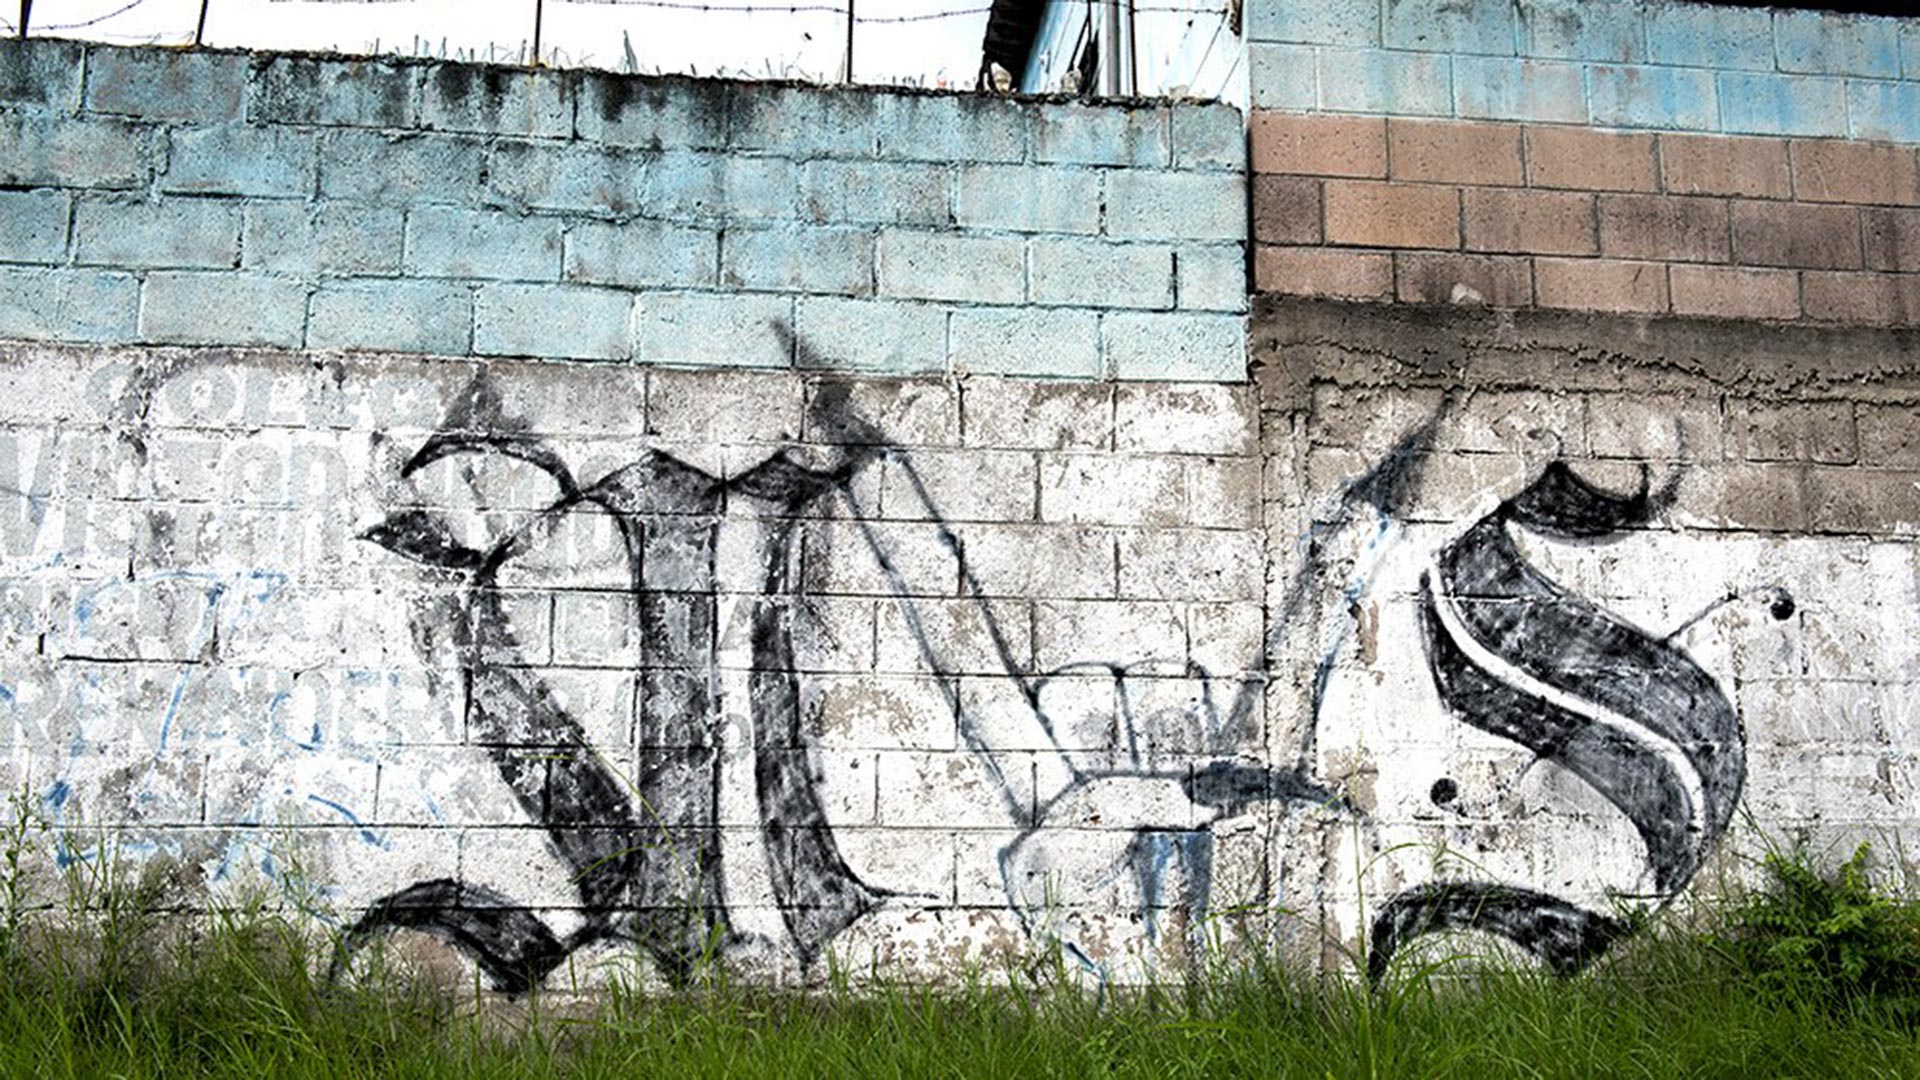 MS-13 Gang graffiti